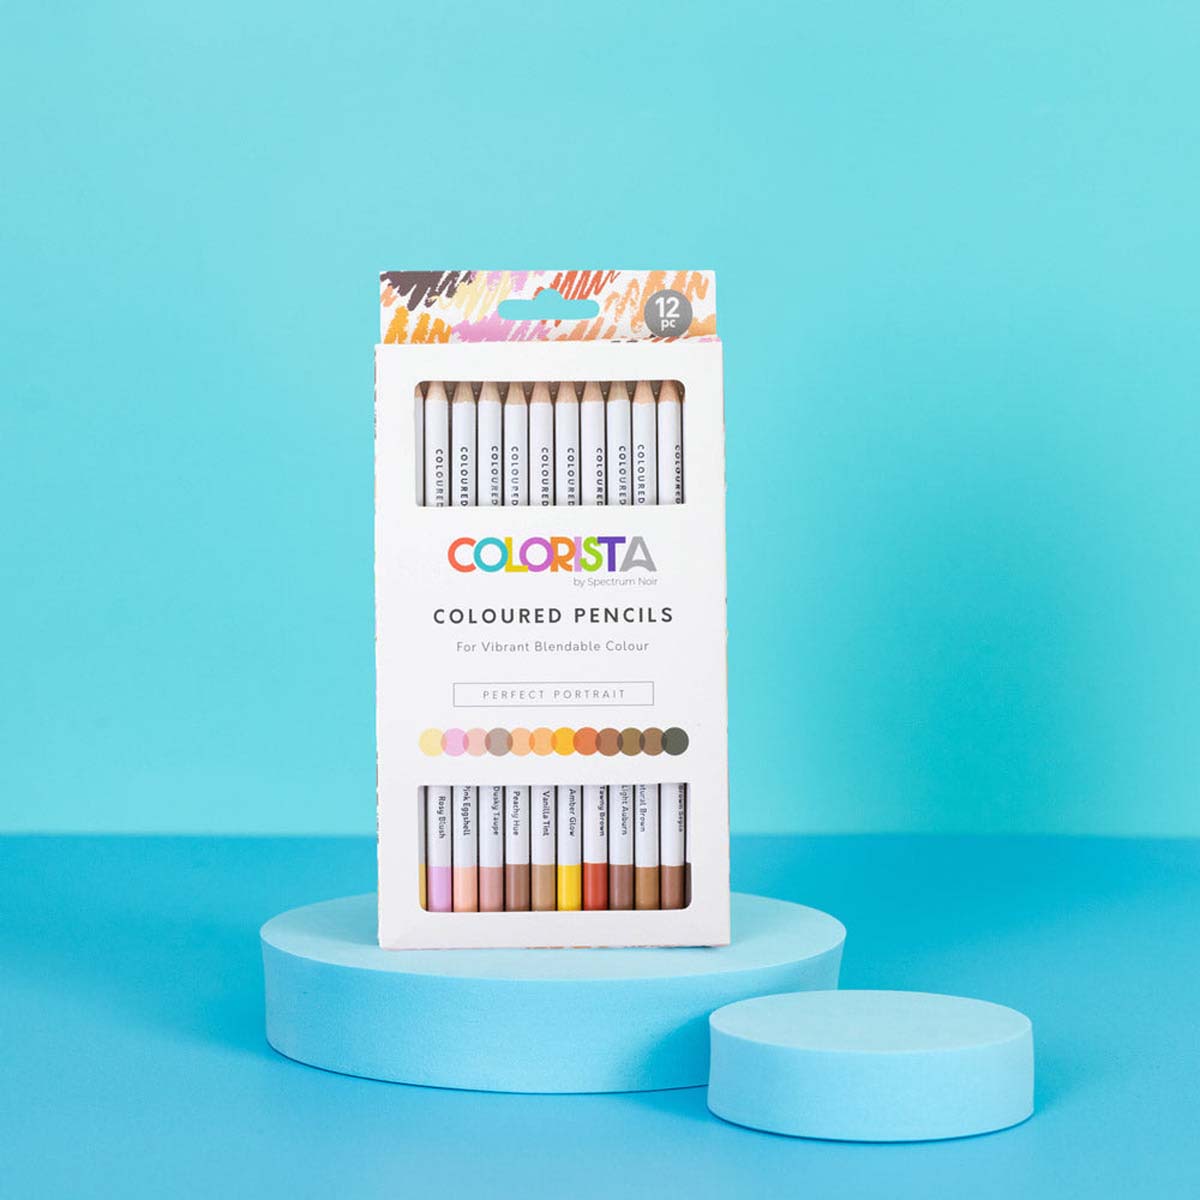 Spectrum Noir Colrista - Crayons de coloriage (12 set) Portrait parfait